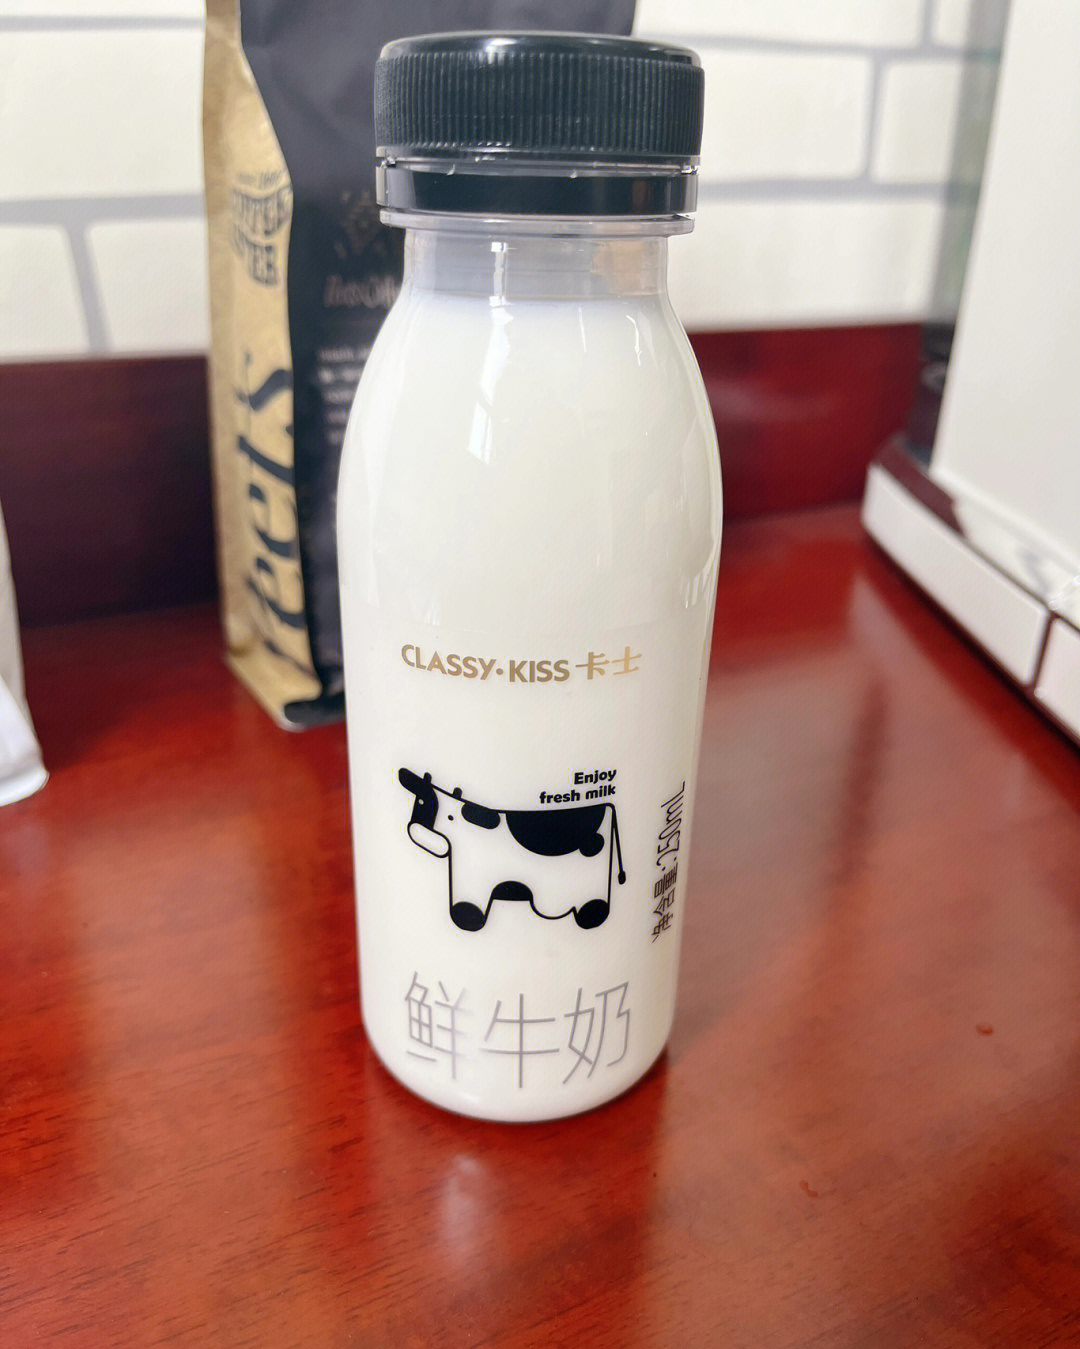 卡士鲜牛奶780ml图片